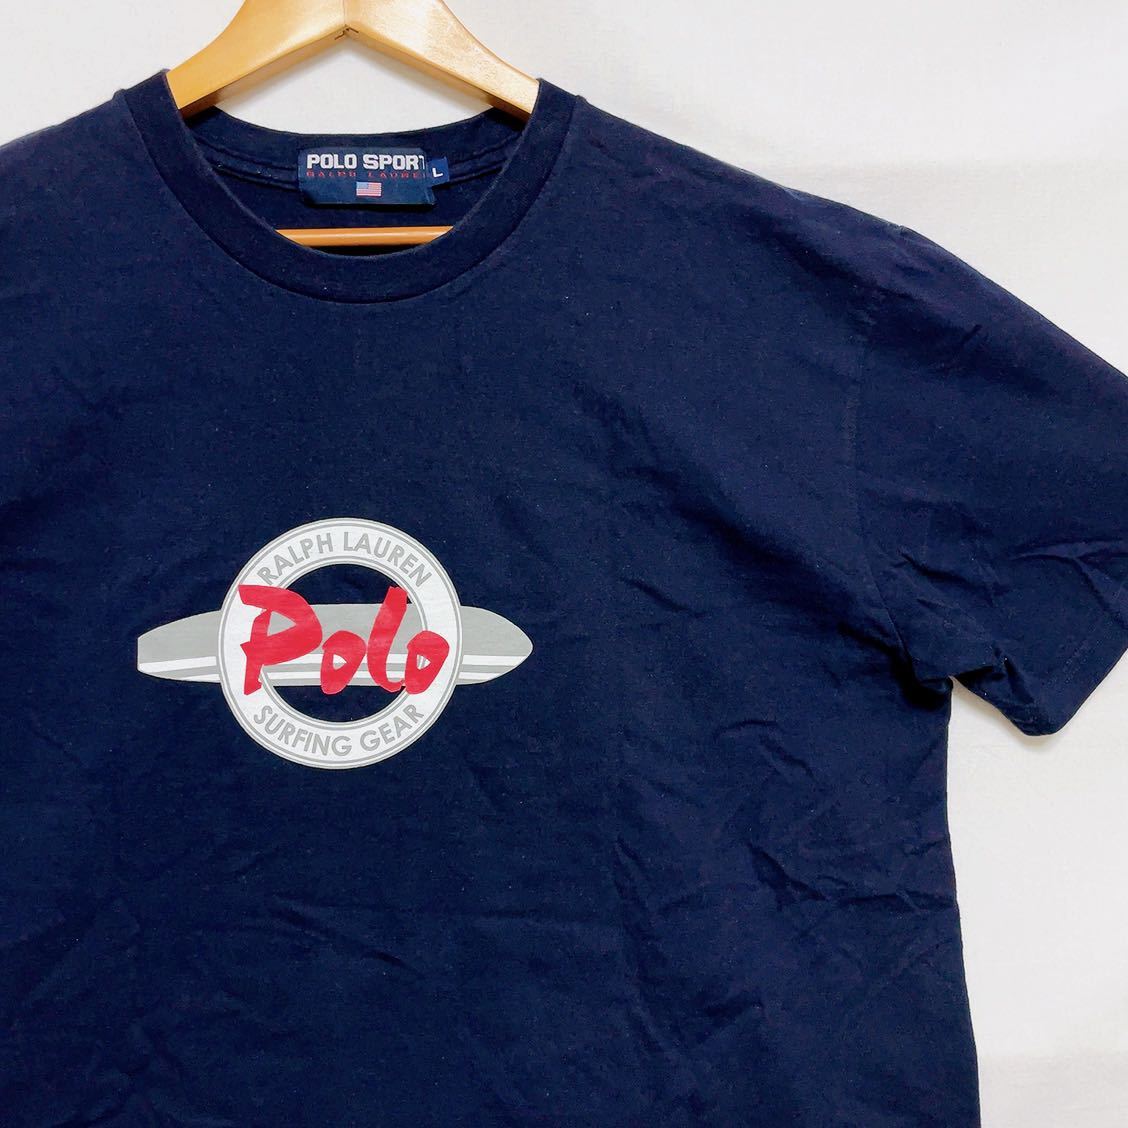 90s POLO SPORT RALPH LAUREN ポロスポーツ Tシャツ ラルフローレン オールド ビンテージ